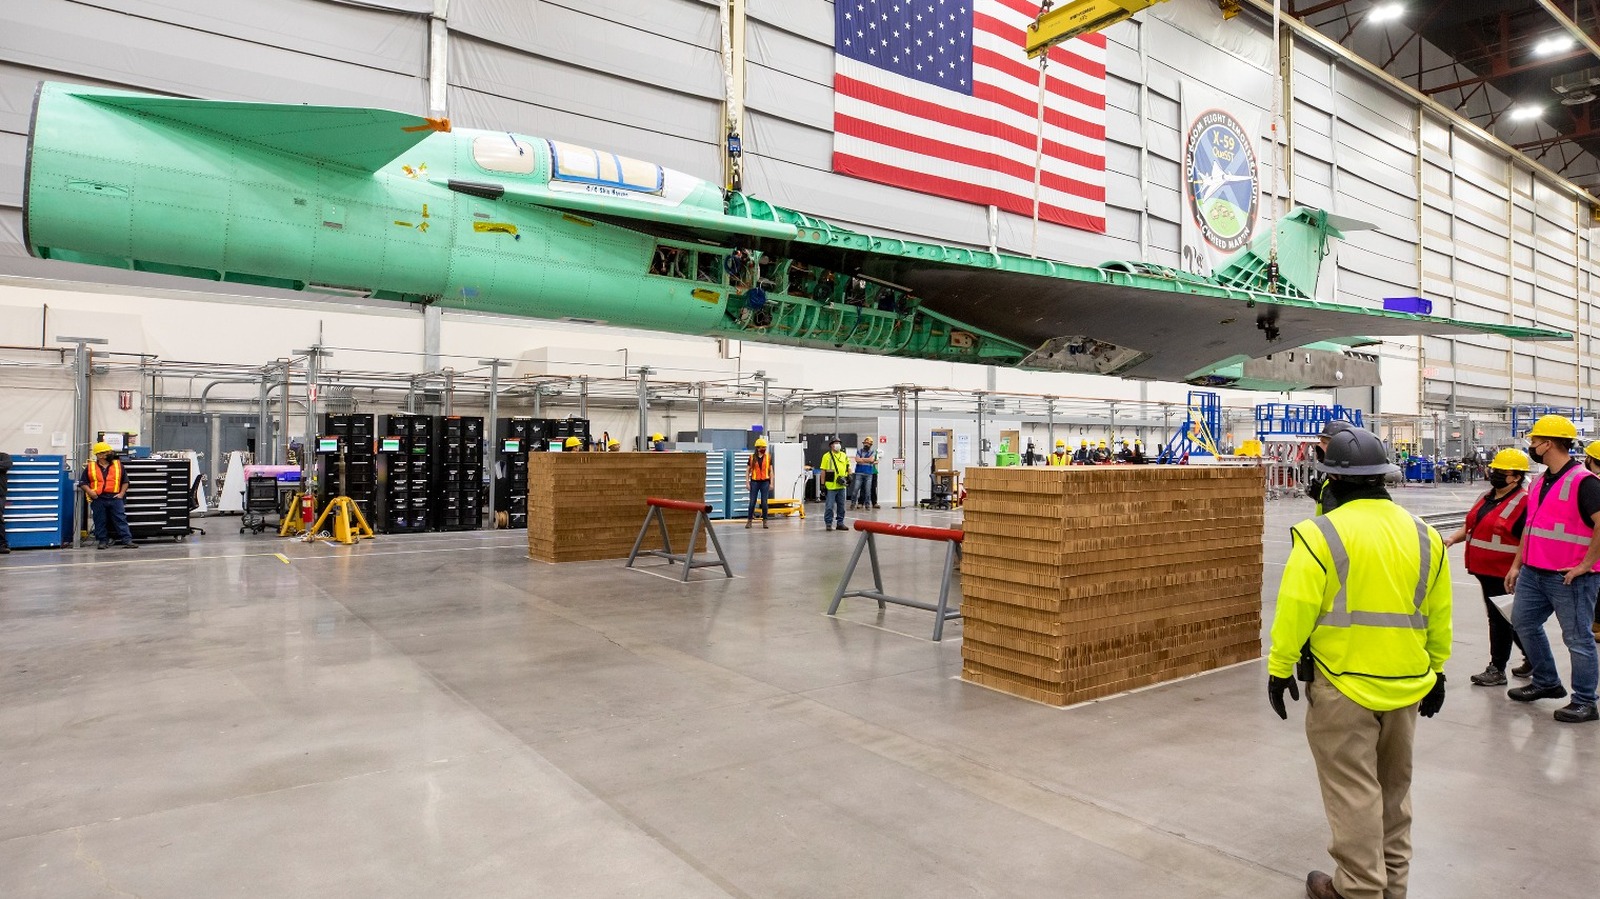 NASA Quesst ger X-59 Supersonic Stealth Jet Mission ett hoppfullt nytt namn